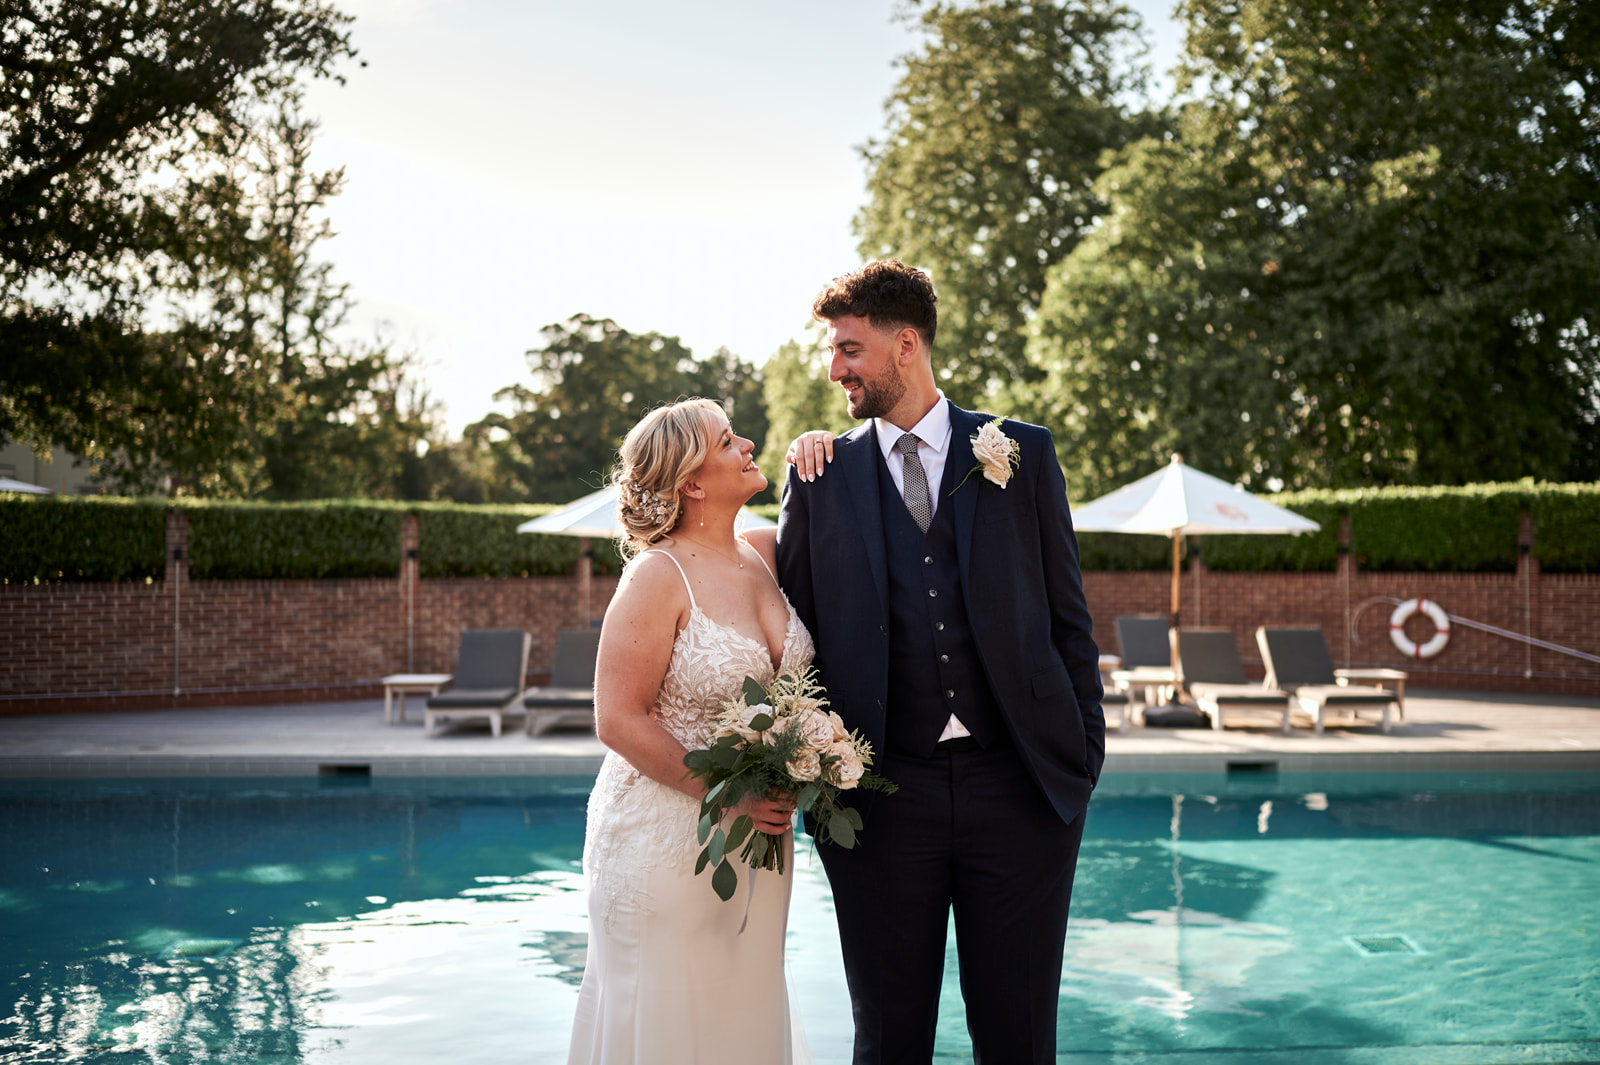 Talbooth House & Spa Wedding - Rachel Reeve Photography Veil Couple Golden Hour